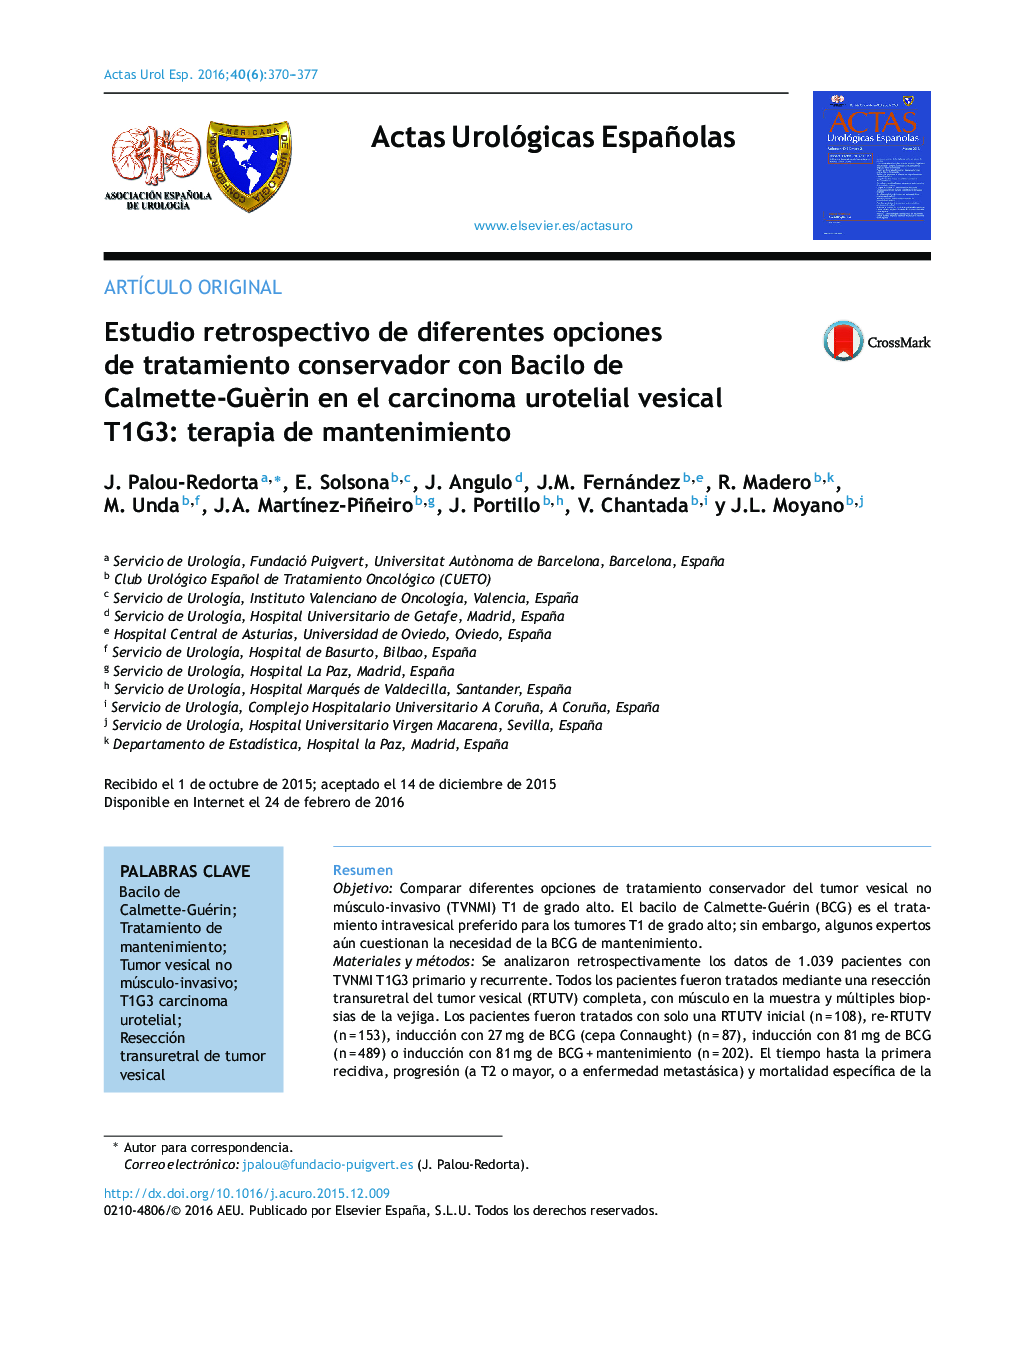 Estudio retrospectivo de diferentes opciones de tratamiento conservador con Bacilo de Calmette-GuÃ¨rin en el carcinoma urotelial vesical T1G3: terapia de mantenimiento